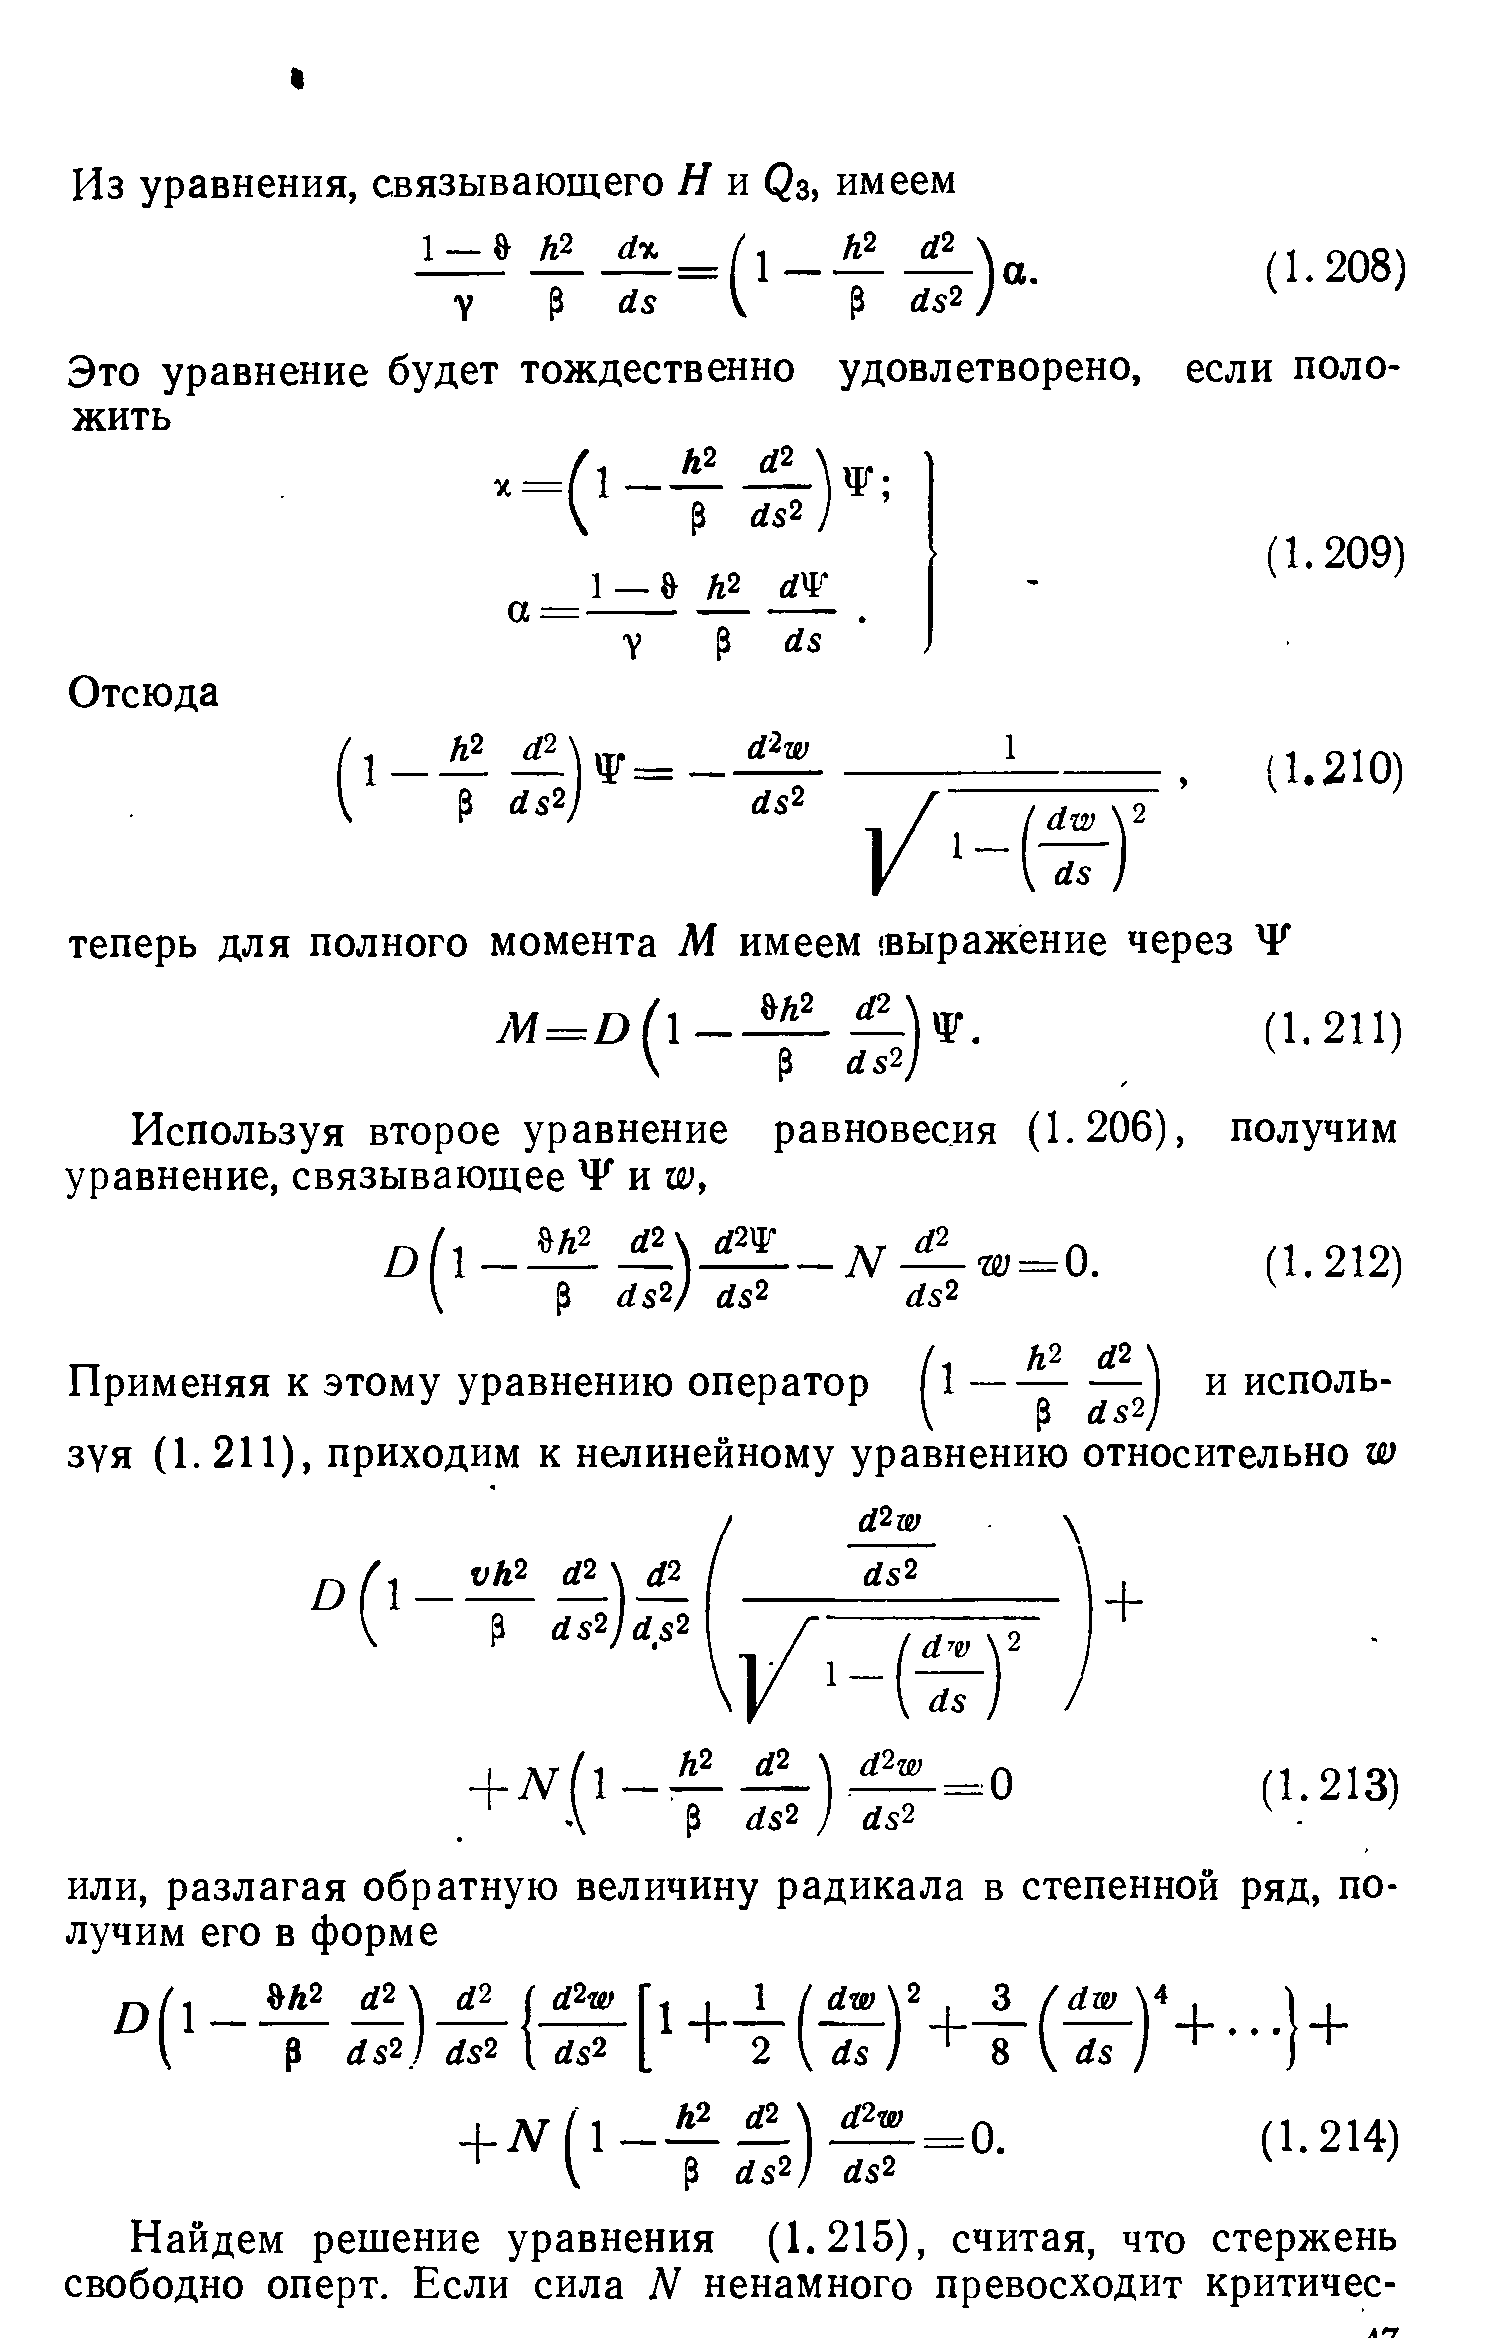 Используя второе уравнение равновесия (1.206), получим уравнение, связывающее Ч и ш.
